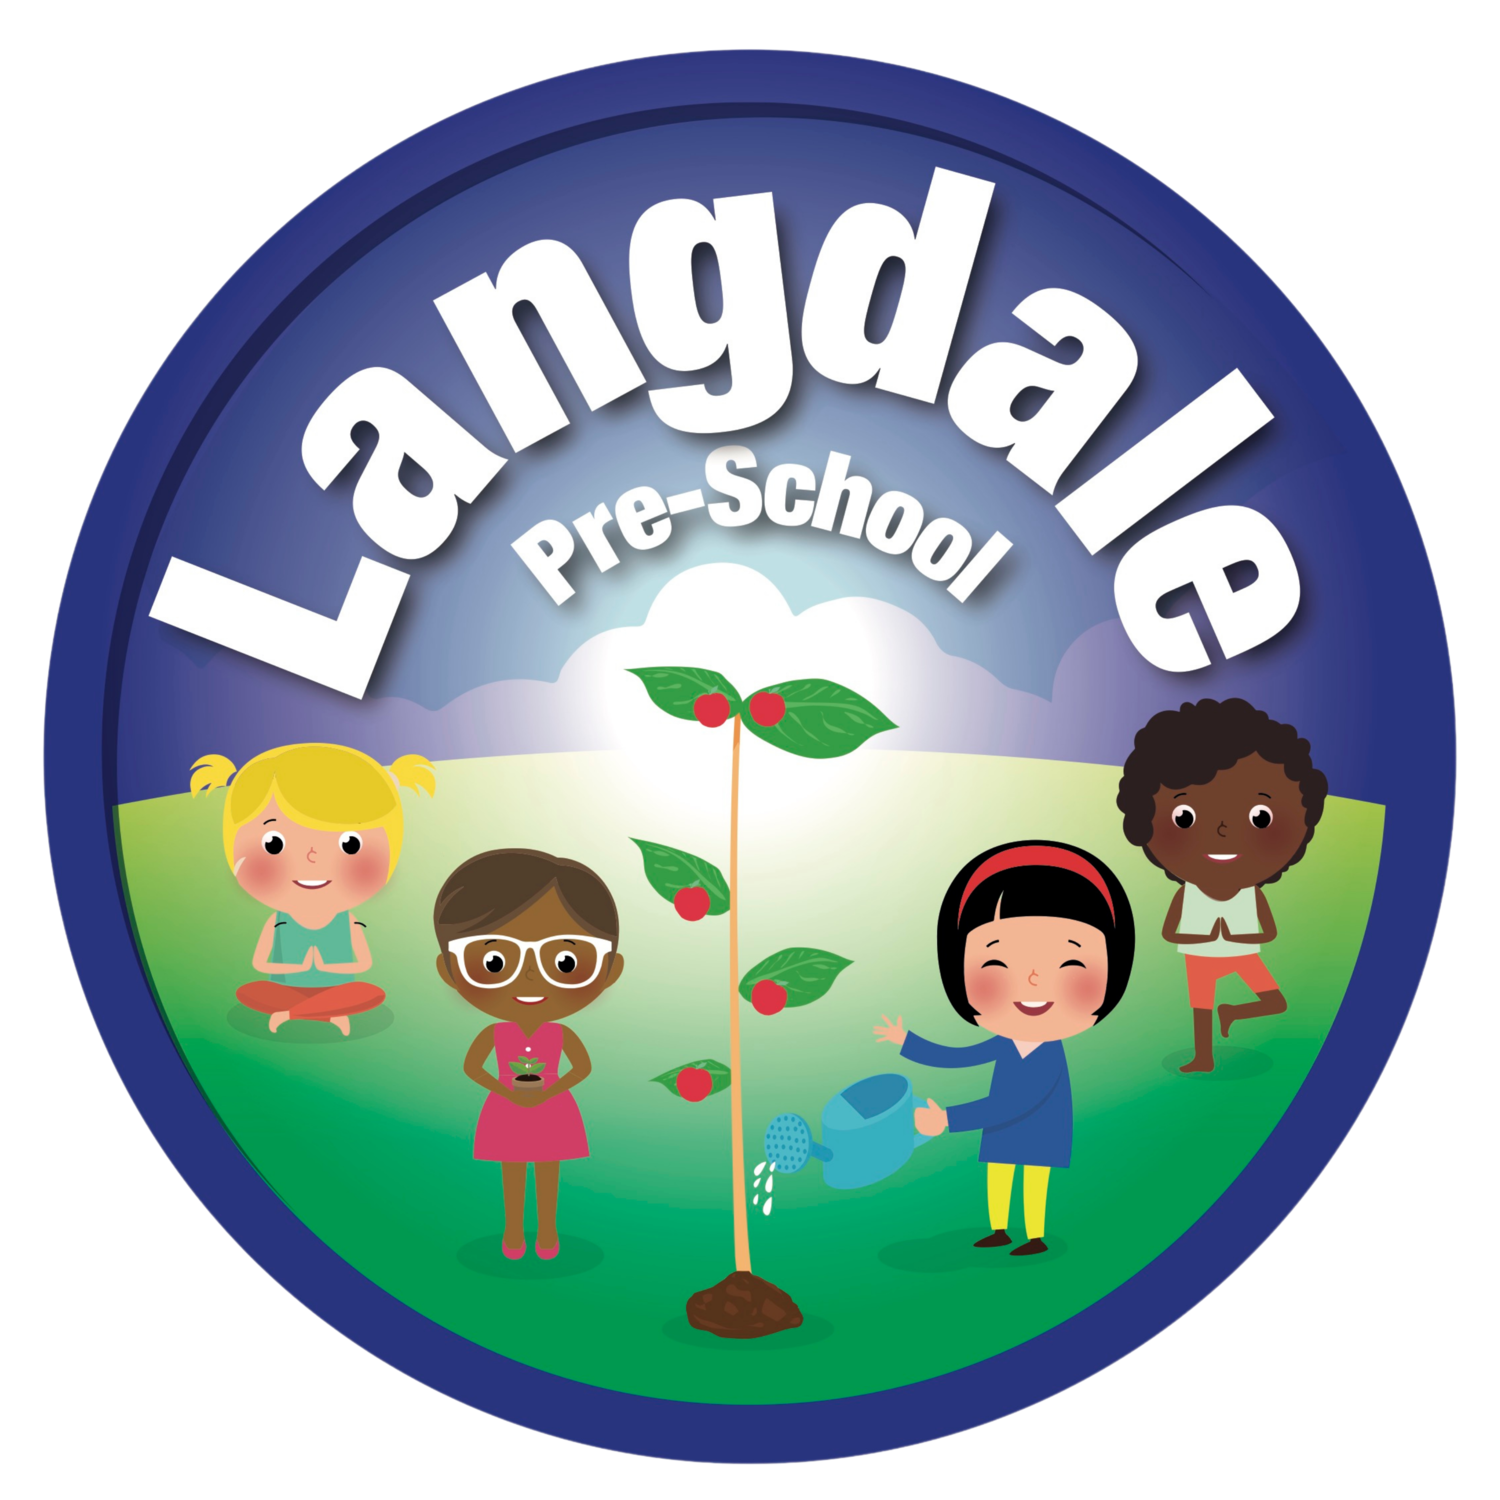 Langdale Pre-School